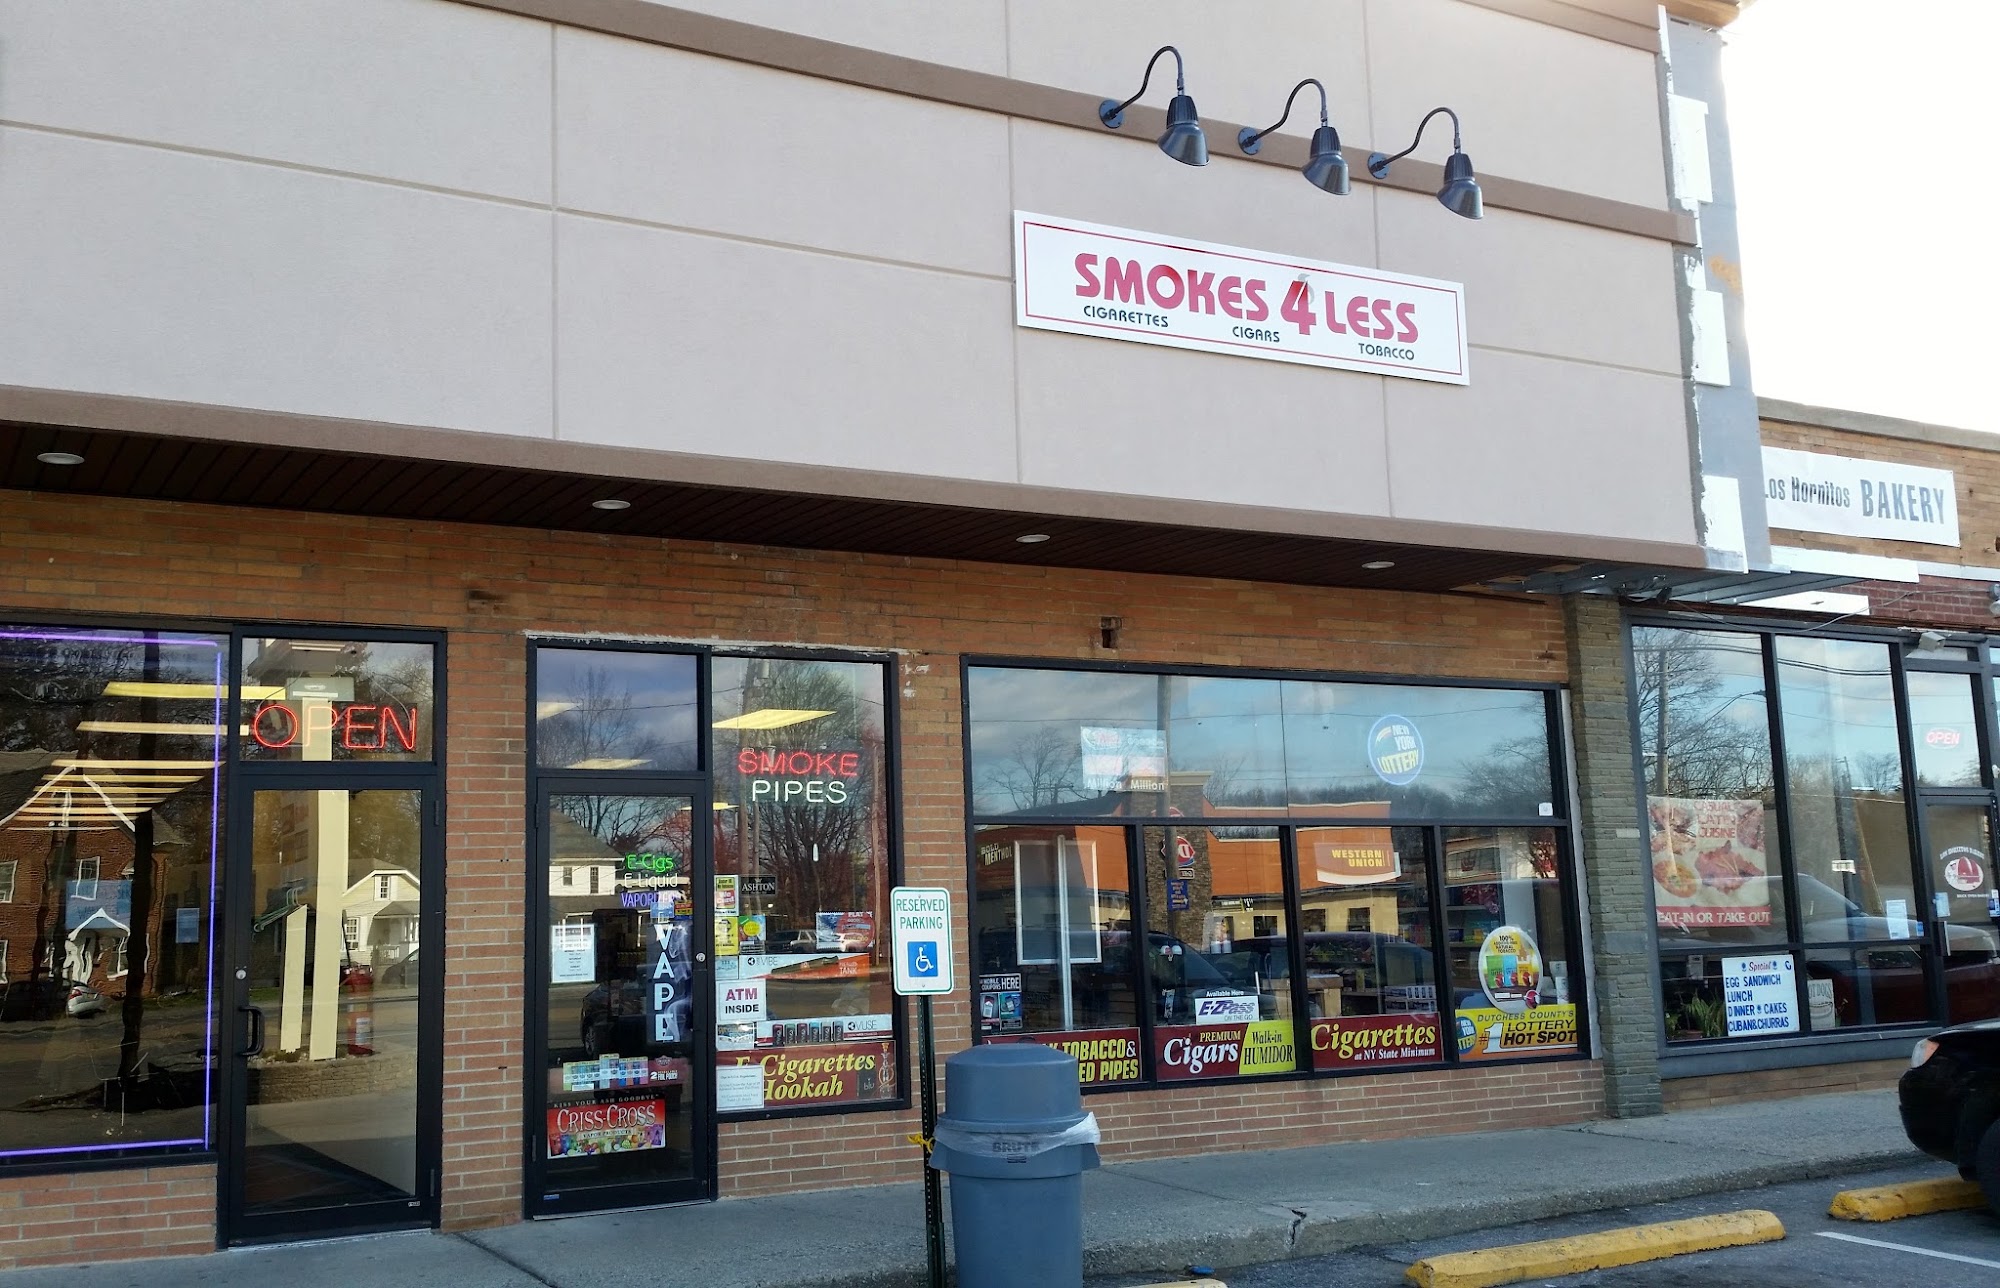 Smokes 4 Less (Dunkin Plaza)